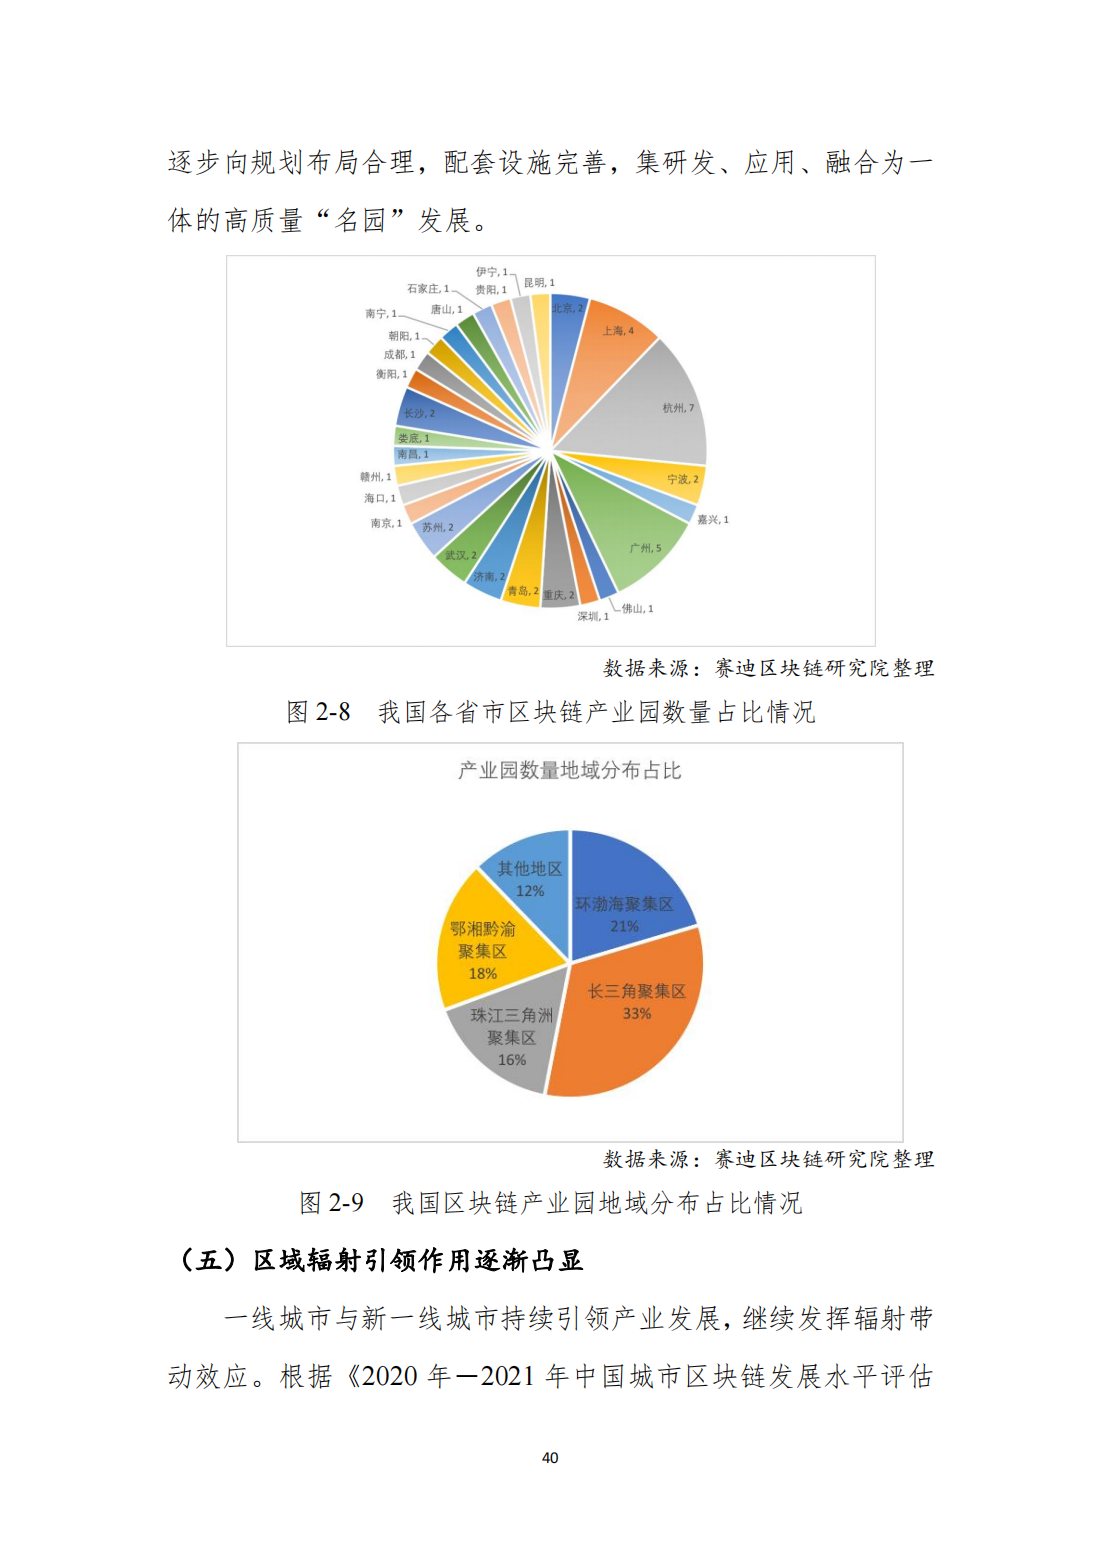 中国区块链发展白皮书—总体现状、产业发展、技术创新、行业应用